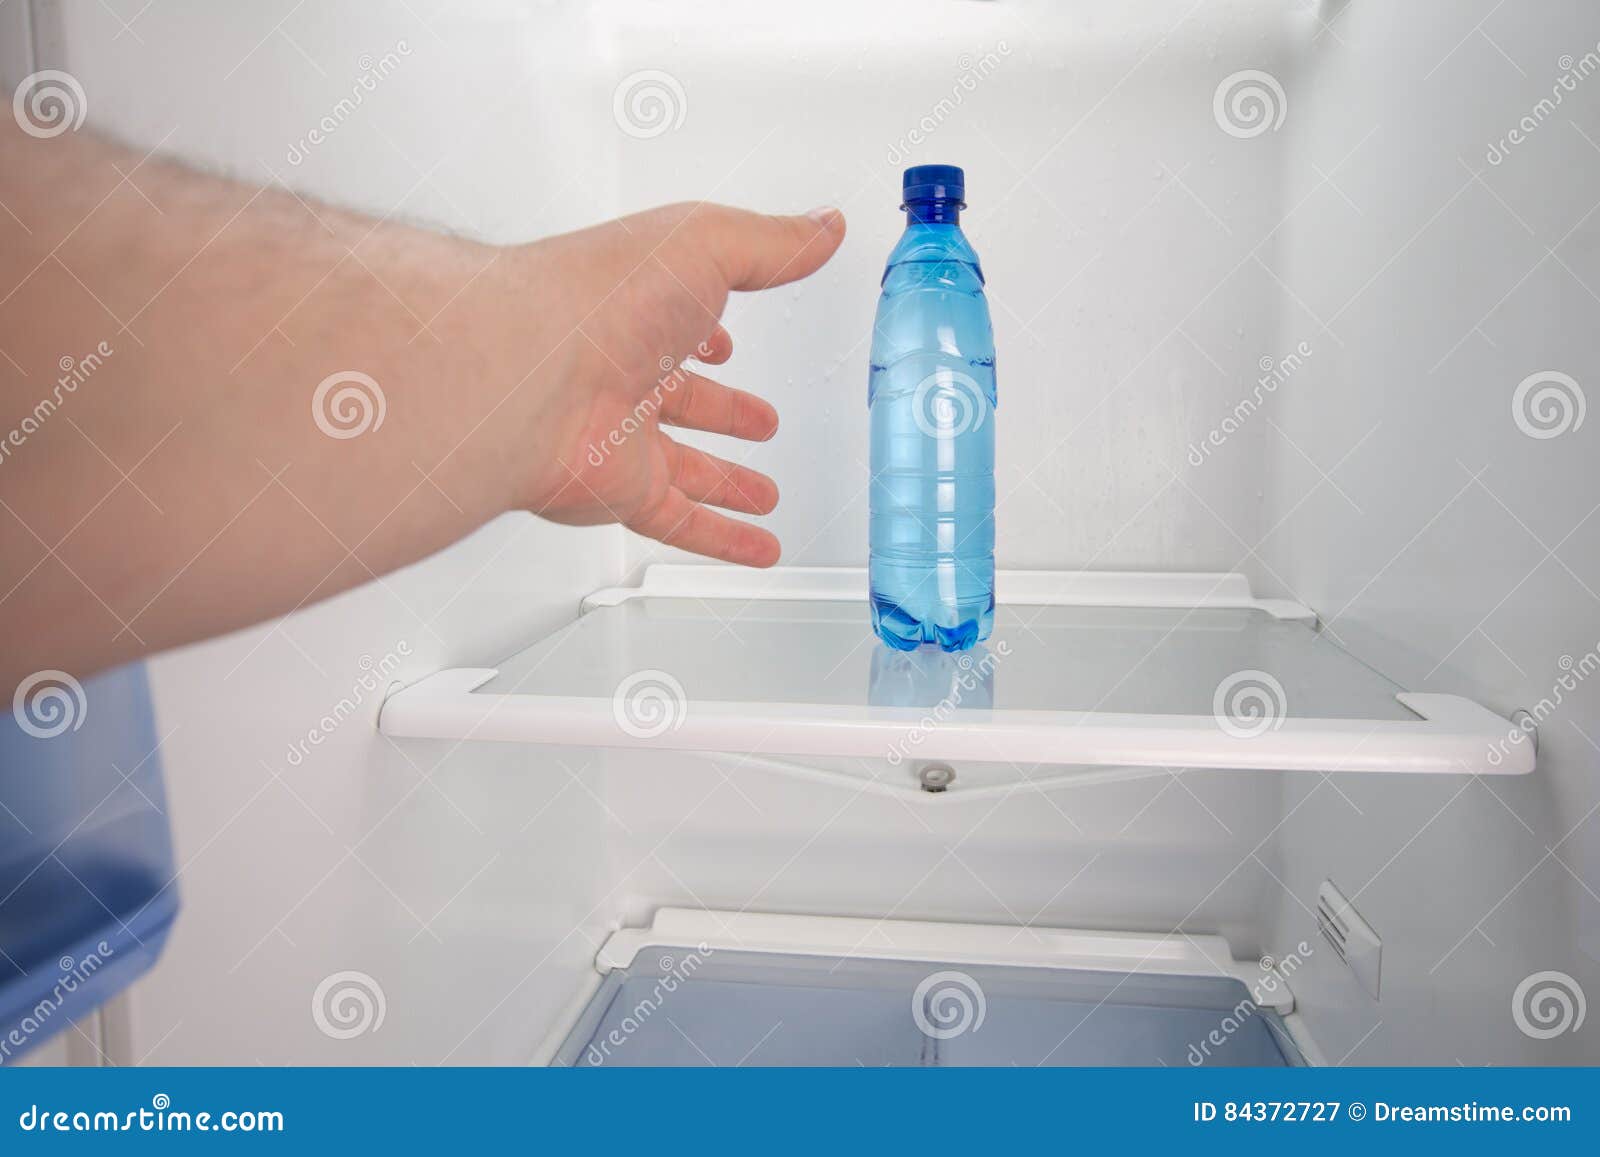 Горячую воду в холодильник. Холодильник для воды. Холодильник/минералка. Лоток для воды в холодильнике. Холодильник с холодной водой.